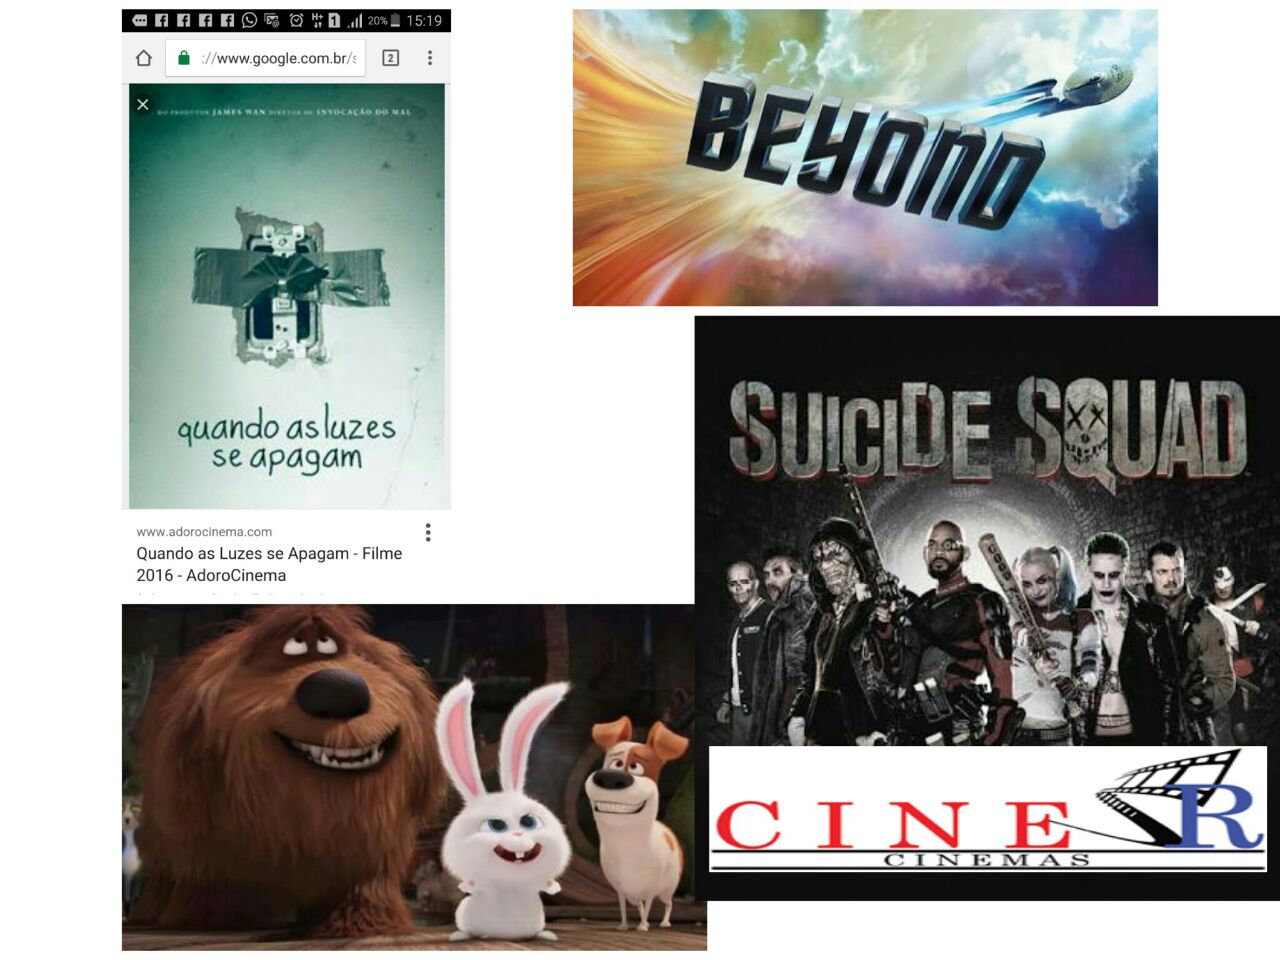 Cine São Roque - Cinemas